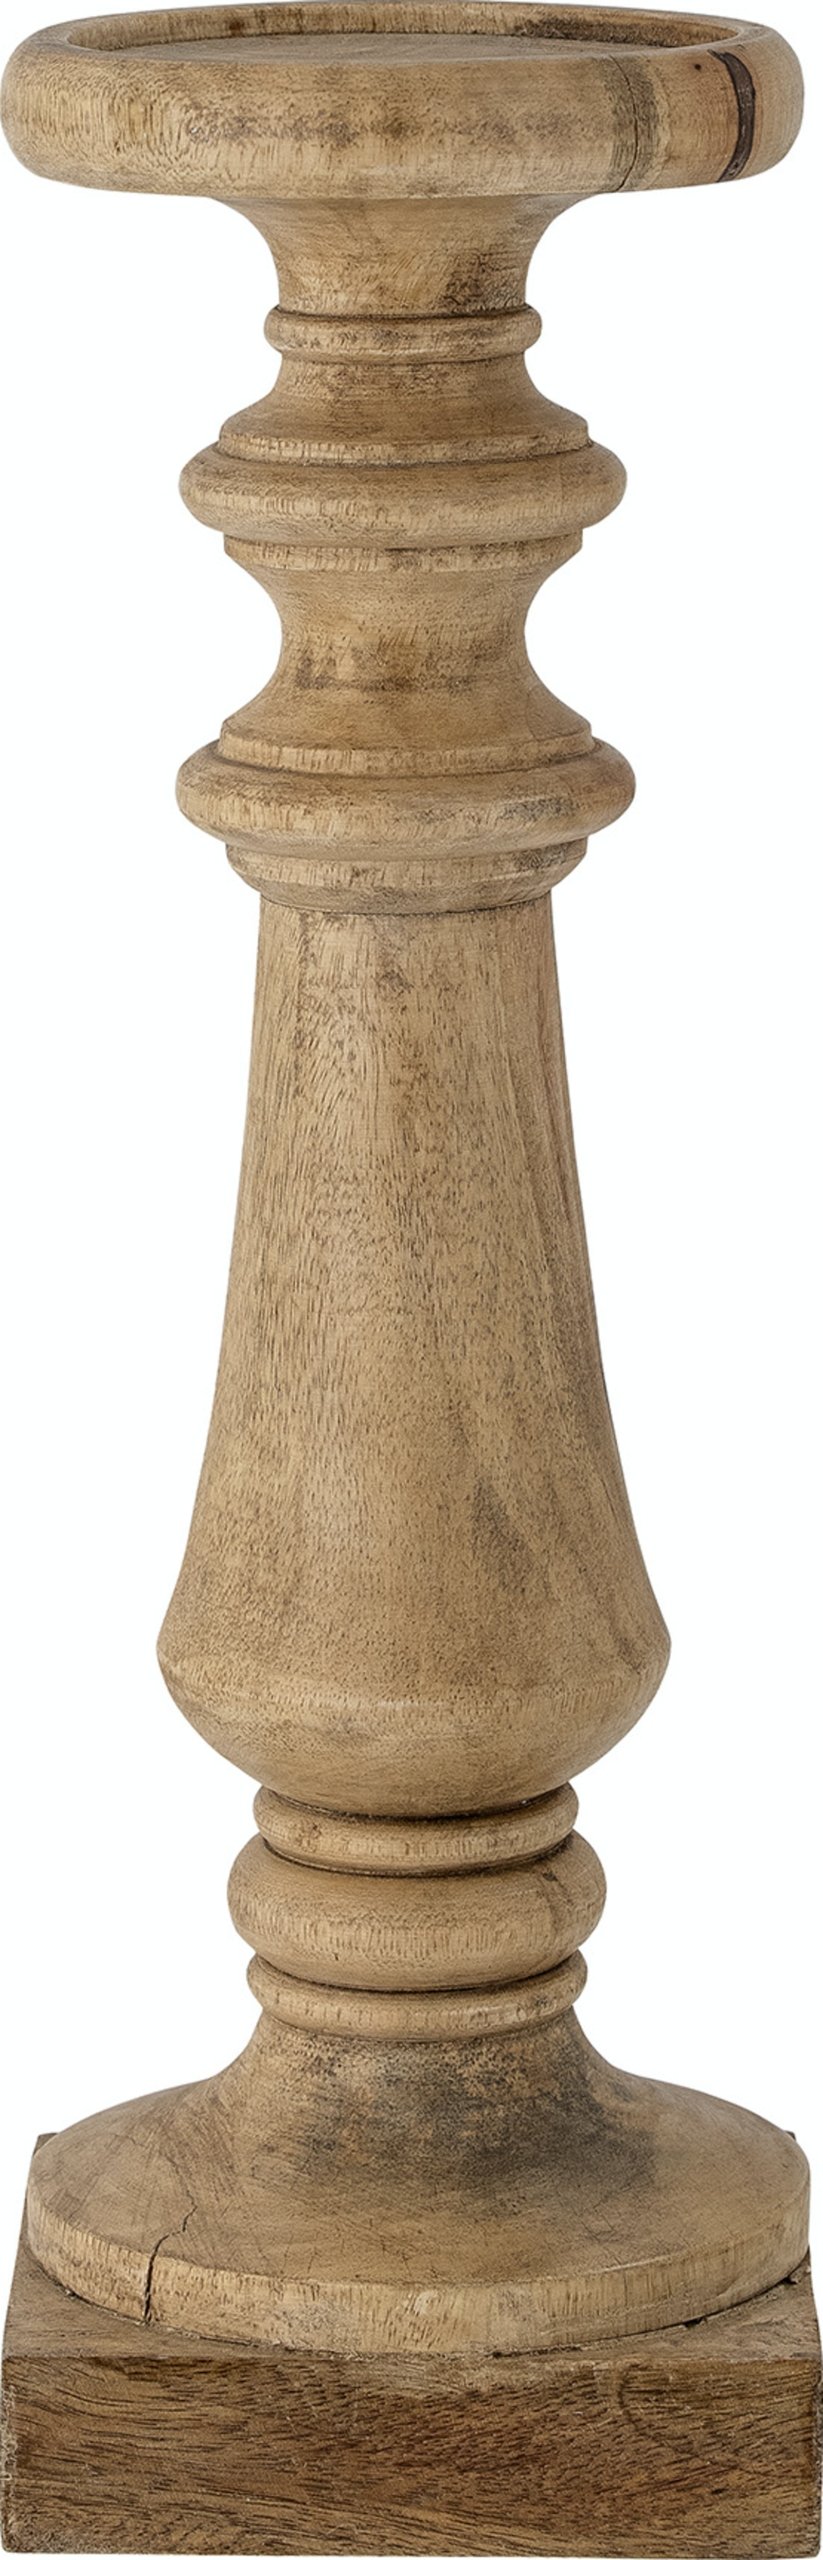 Noore, Piedestal, Mangotræ by Bloomingville (H: 46 cm. x B: 15 cm. x L: 15 cm., Natur)